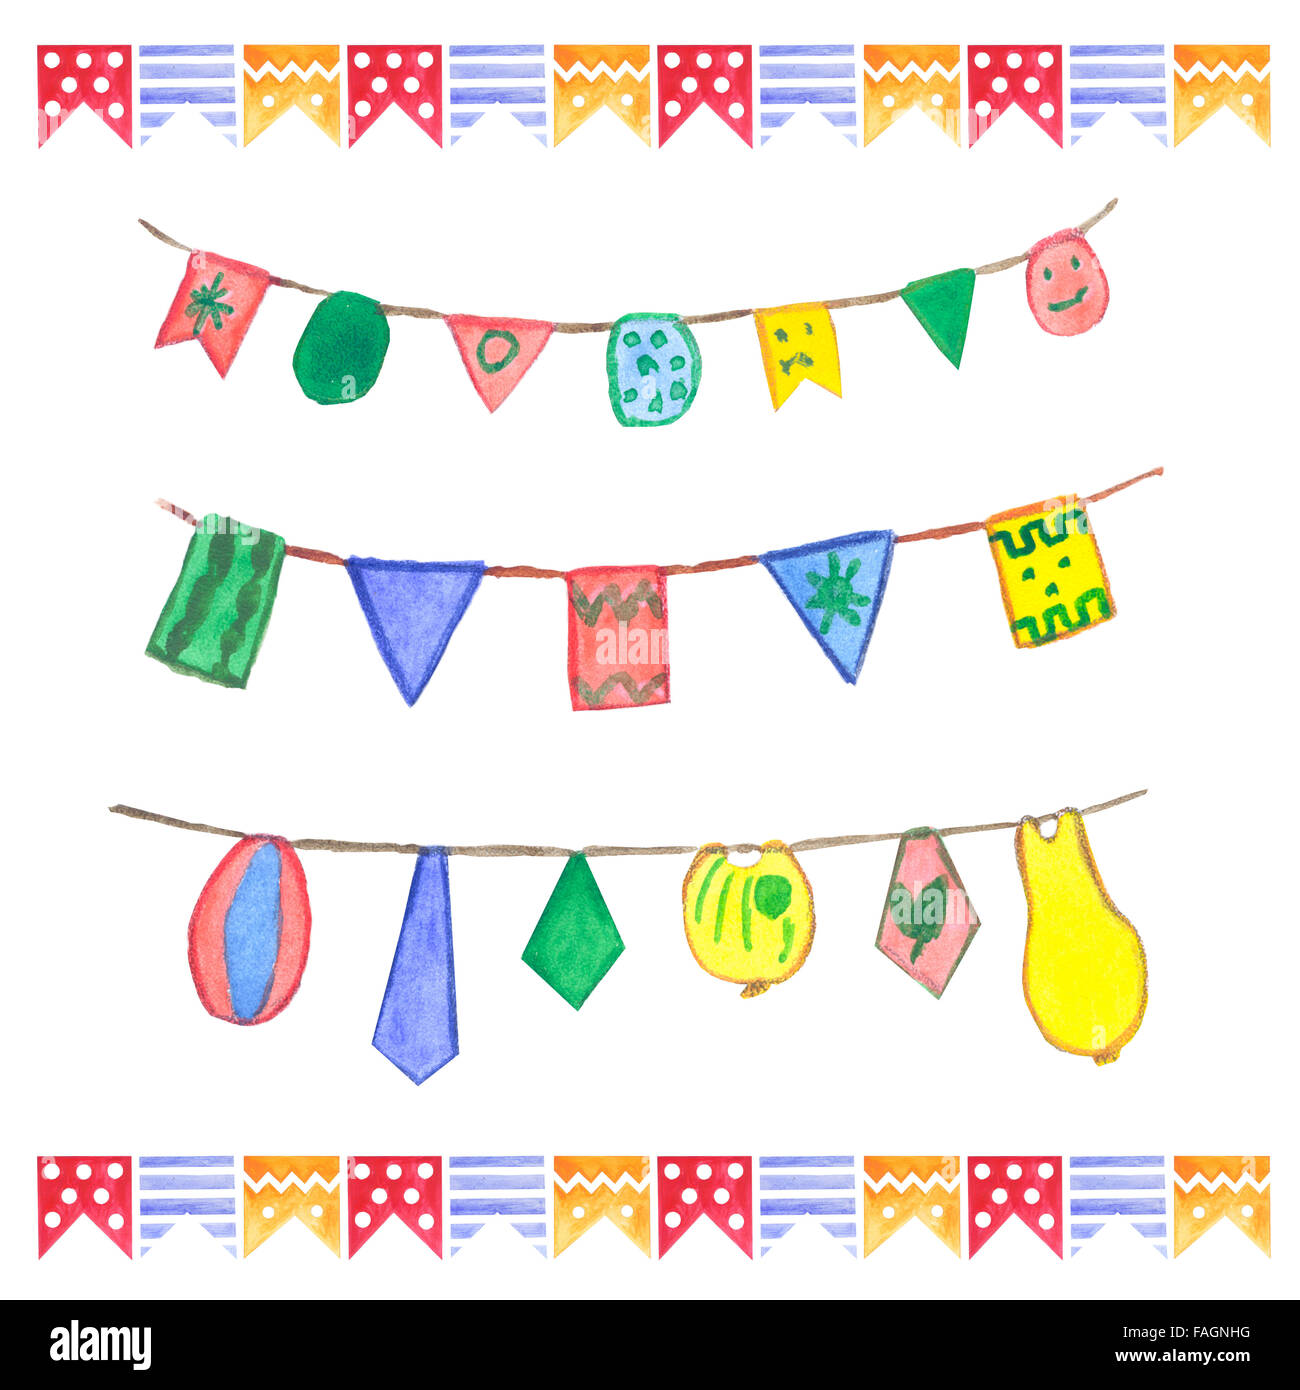 Guirlandes drapeaux aquarelle set. Décoration d'anniversaire. Les guirlandes électriques réalisés dans différentes couleurs : vert, jaune, orange, rouge, bleu. Banque D'Images